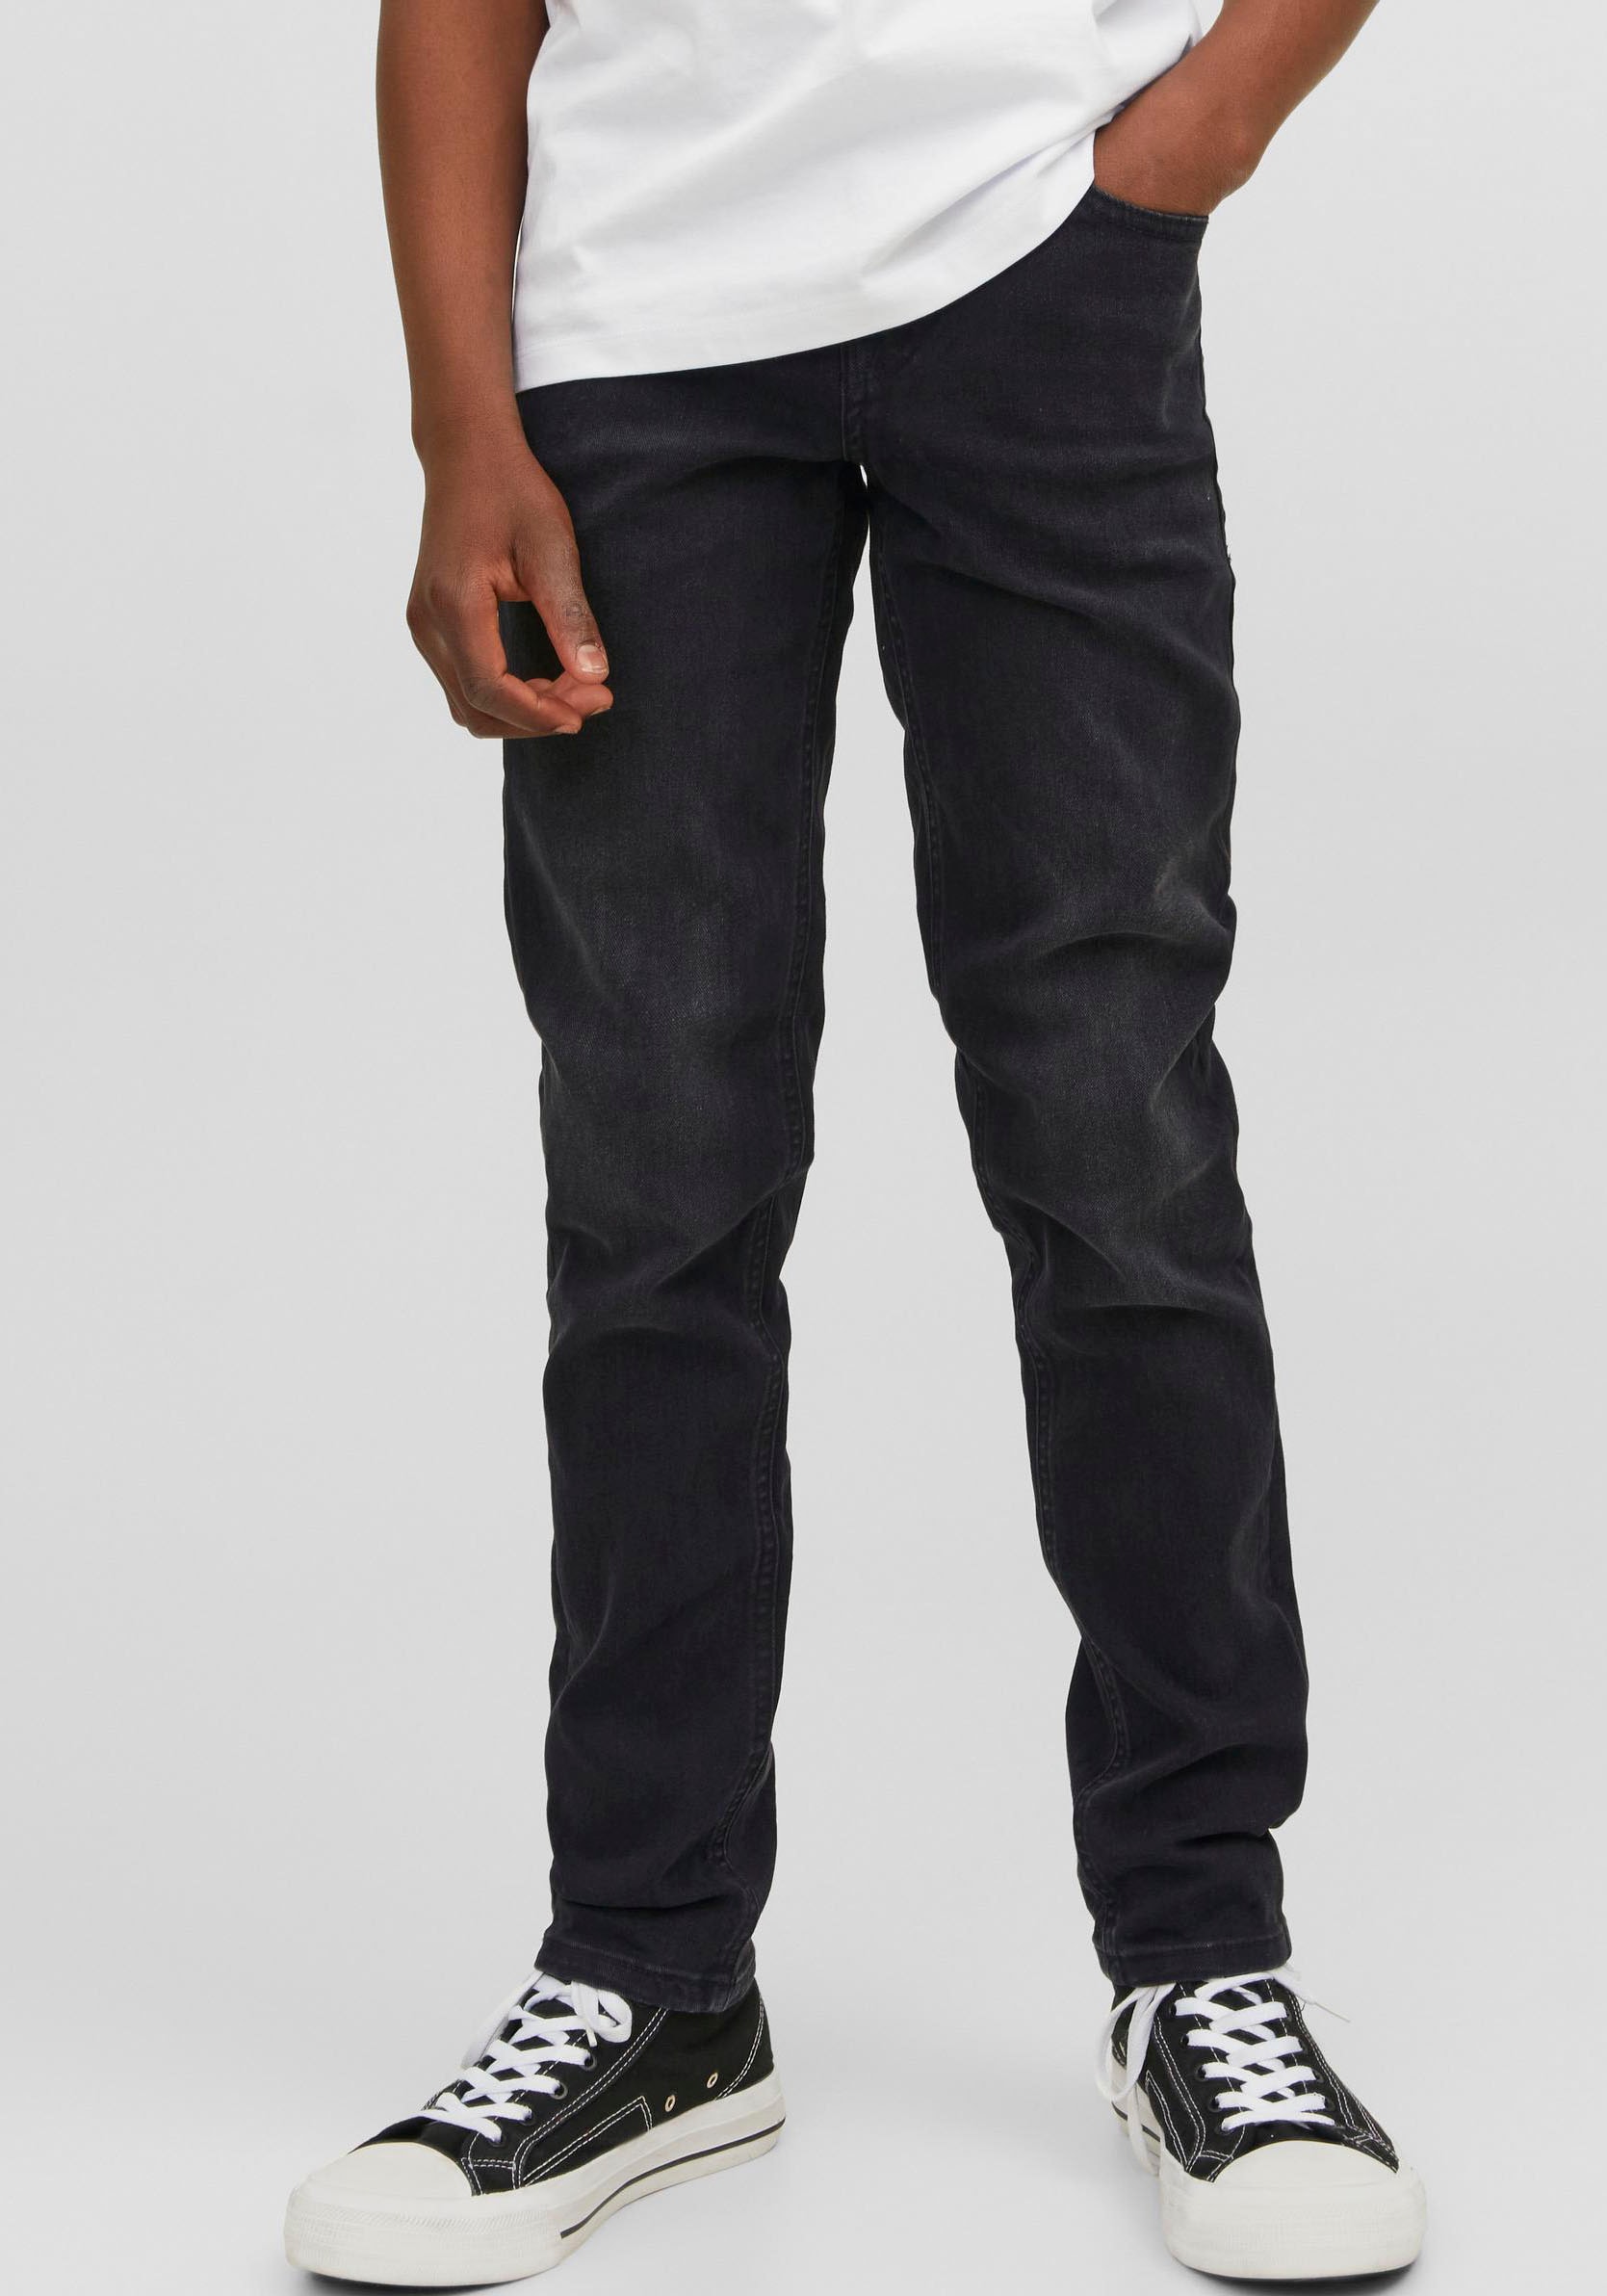 Jeans Jungen Modische online kaufen bequem